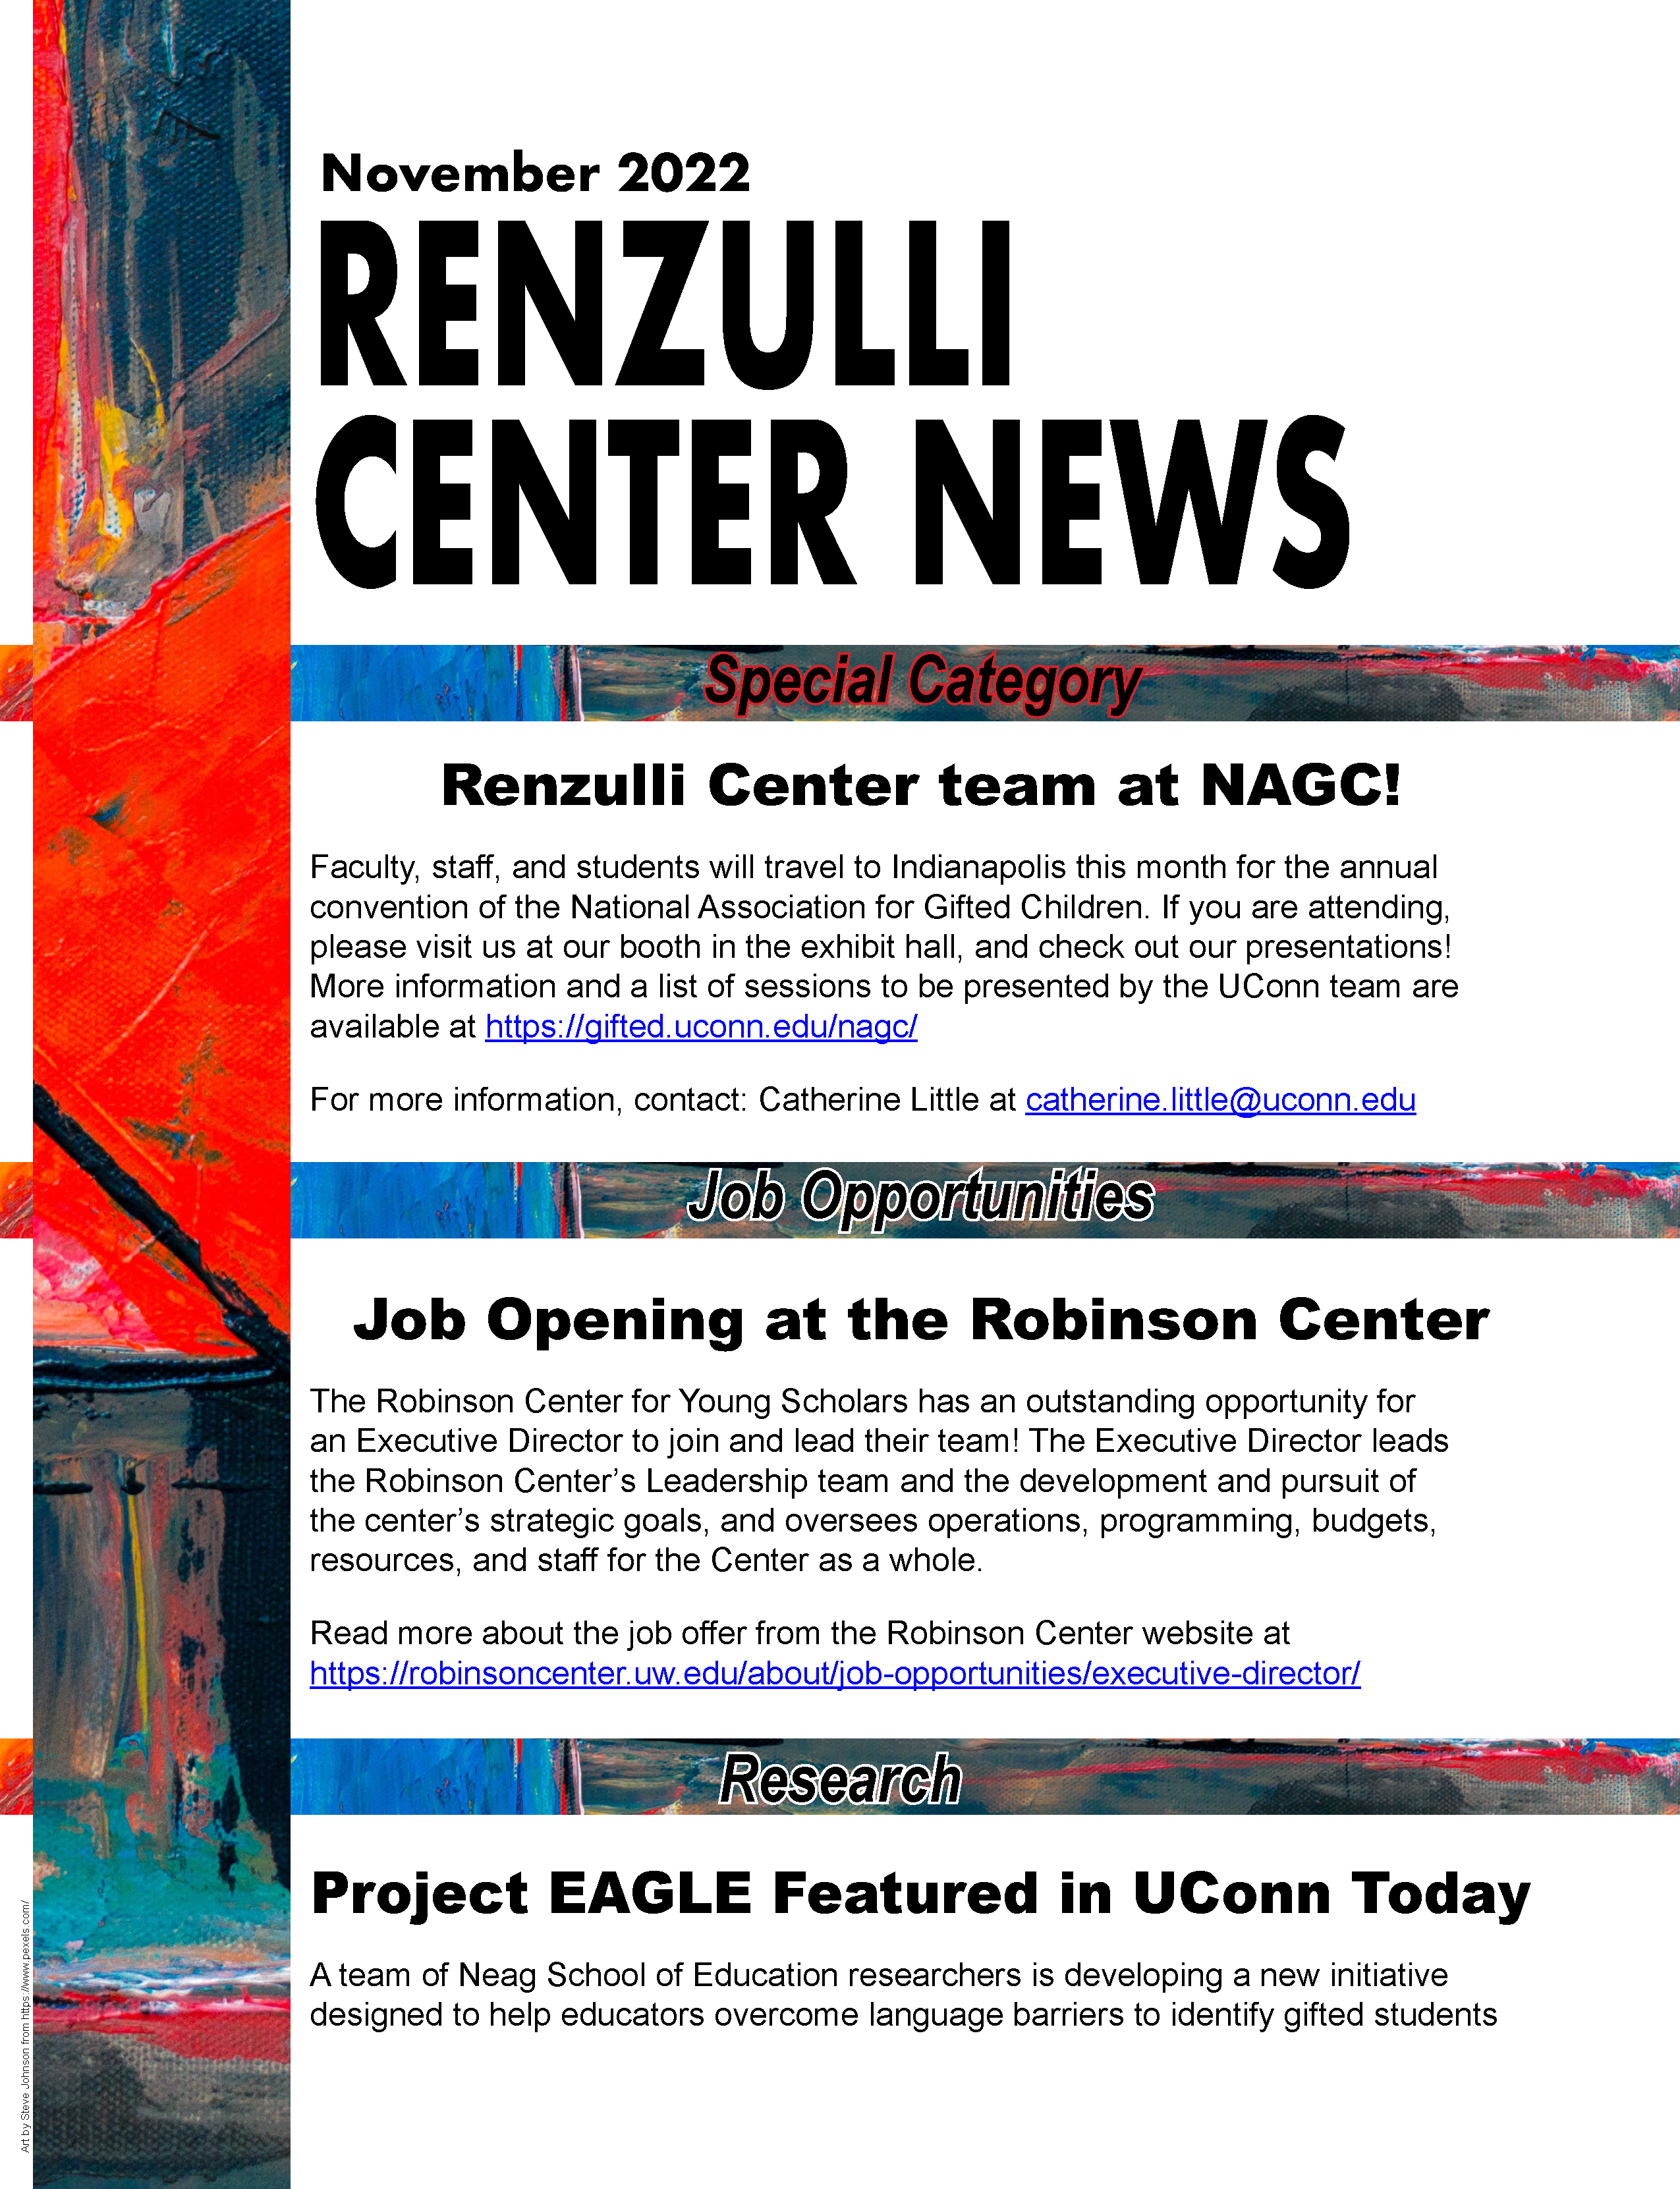 November 2022 Renzulli News Cover Graphic